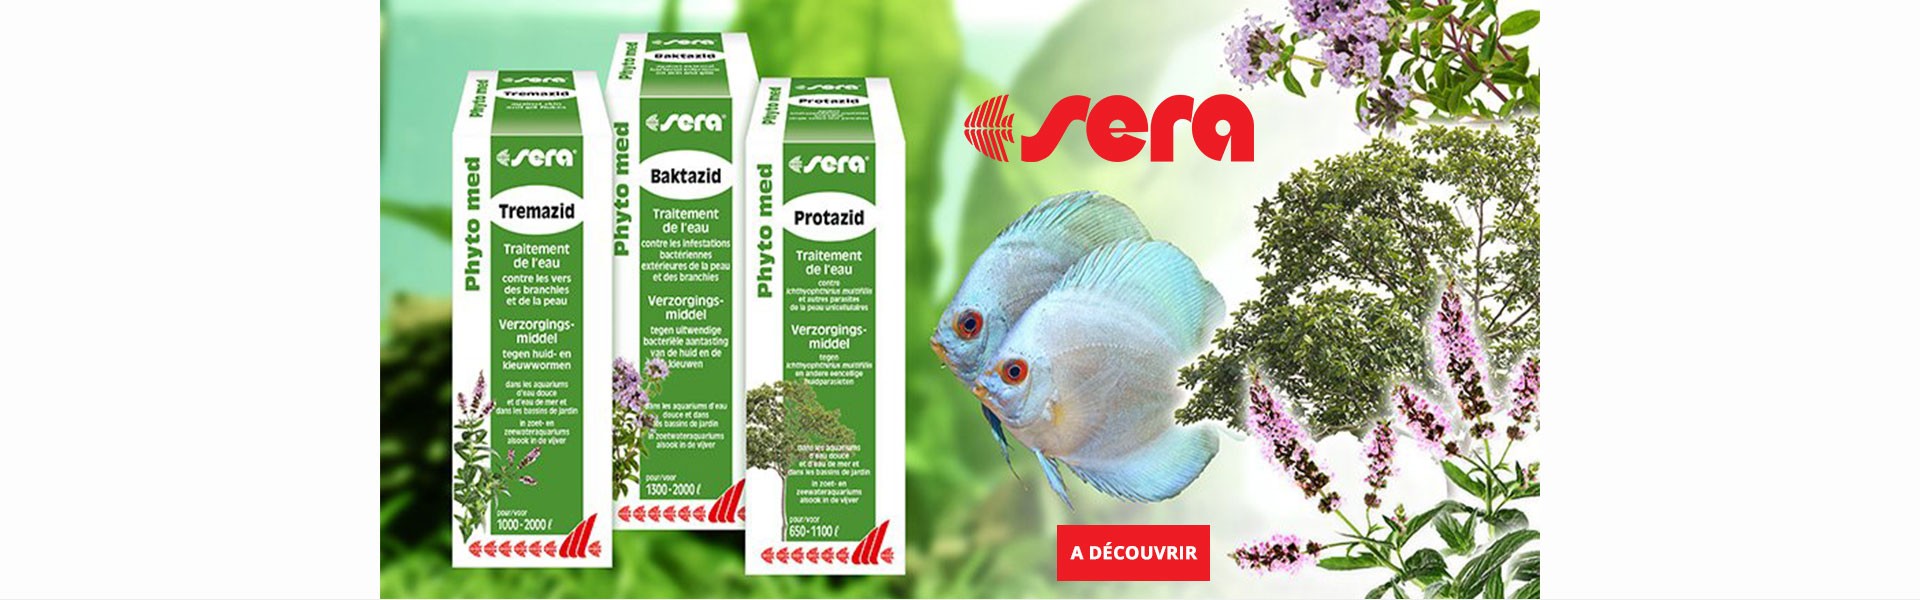 SERA Phyto Med - Traitements de l'eau à base de plantes pour poissons d'ornement